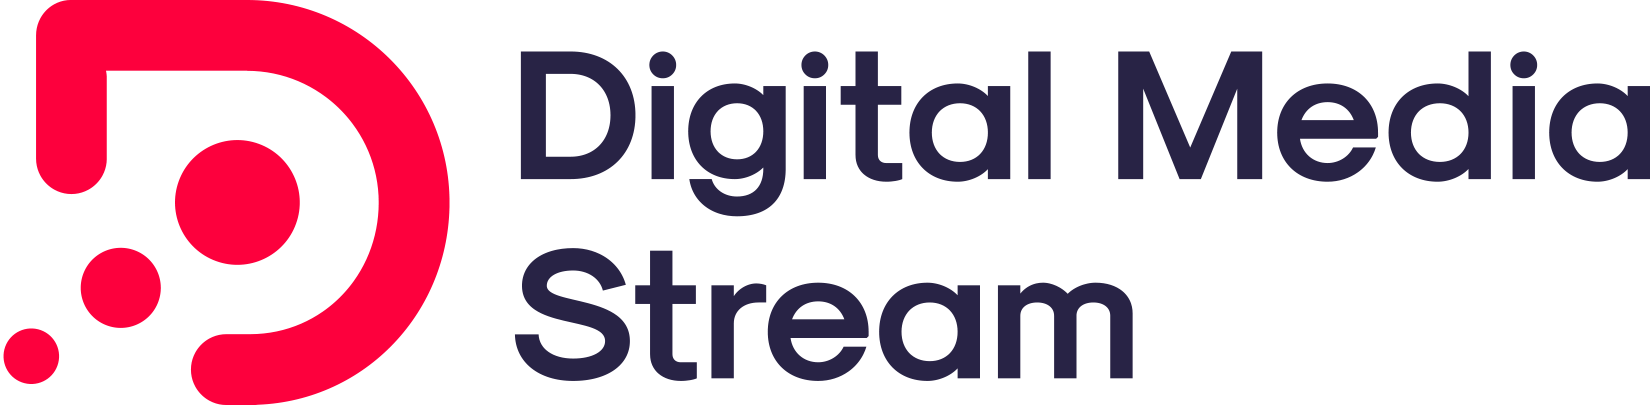 Digital Media Stream